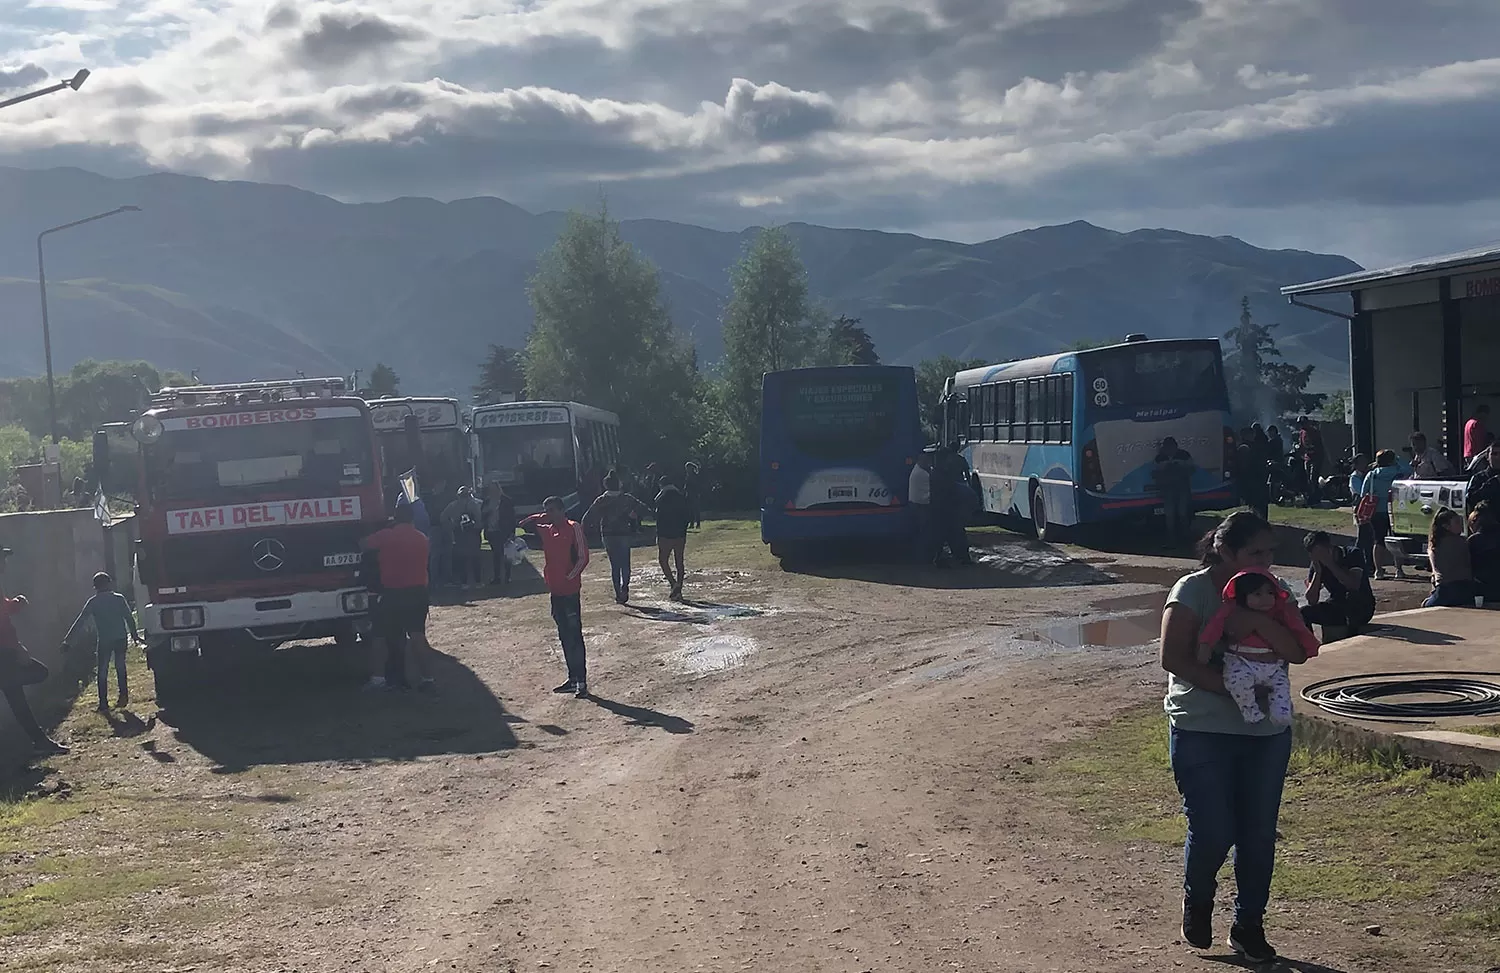 AYUDA. Los turistas varados en Tafí del Valle, tras el corte de la ruta 307, fueron asistidos por los bomberos y autoridades de Tafí del Valle. LA GACETA / FOTOS DE IRENE BENITO